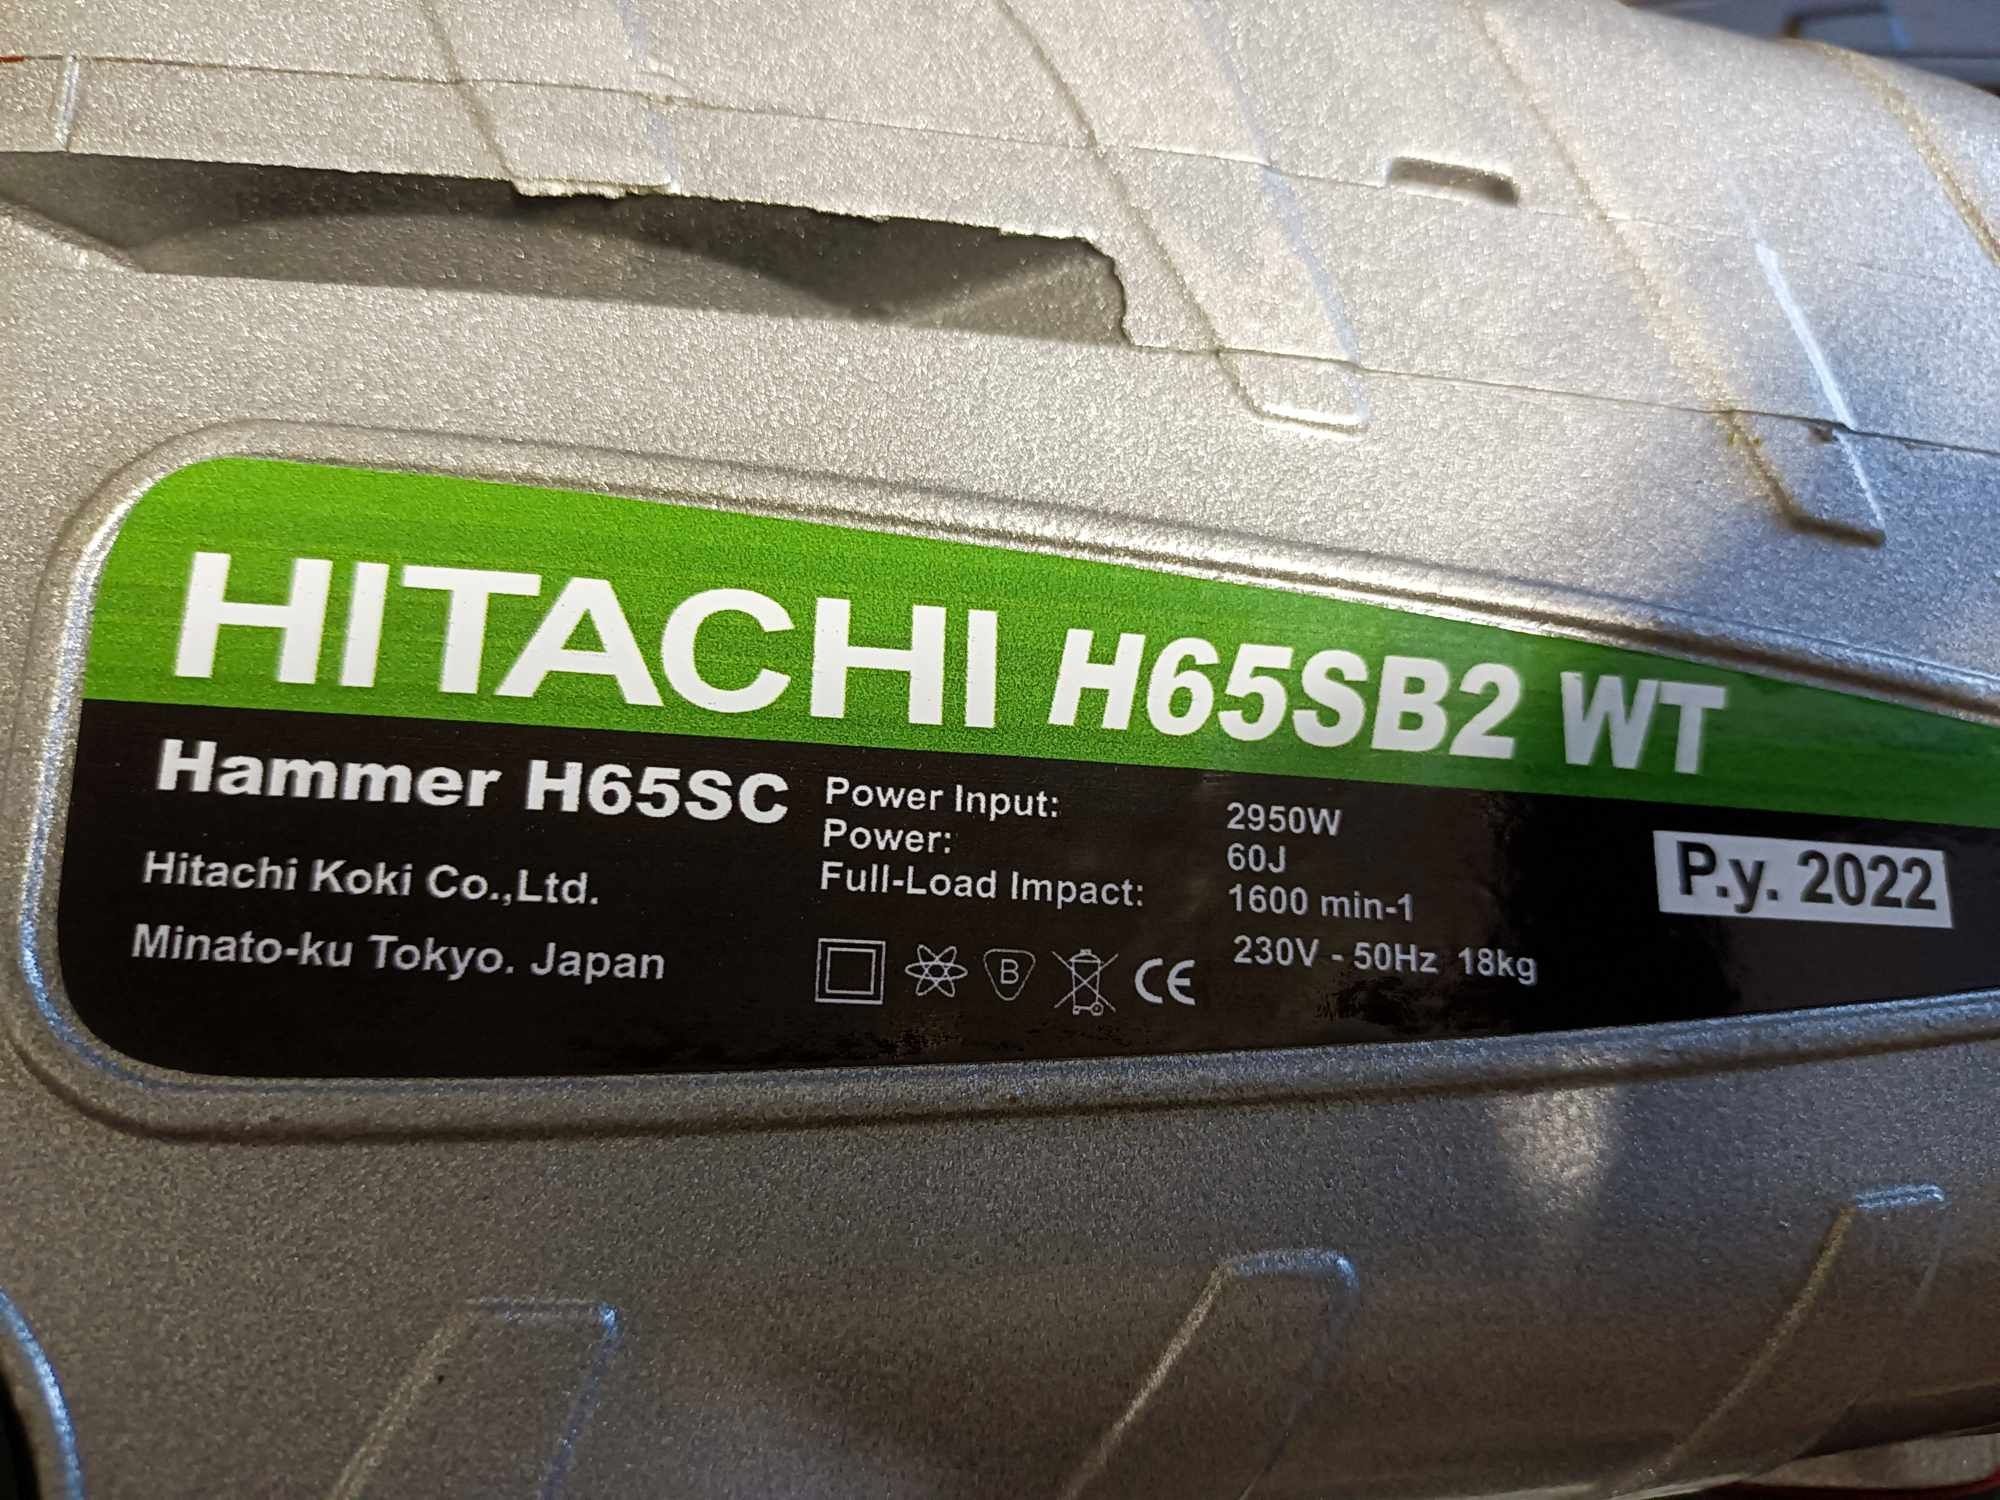 Mlot wyburzeniowy firmy HITACHI. NOWY! H65SB2 WT